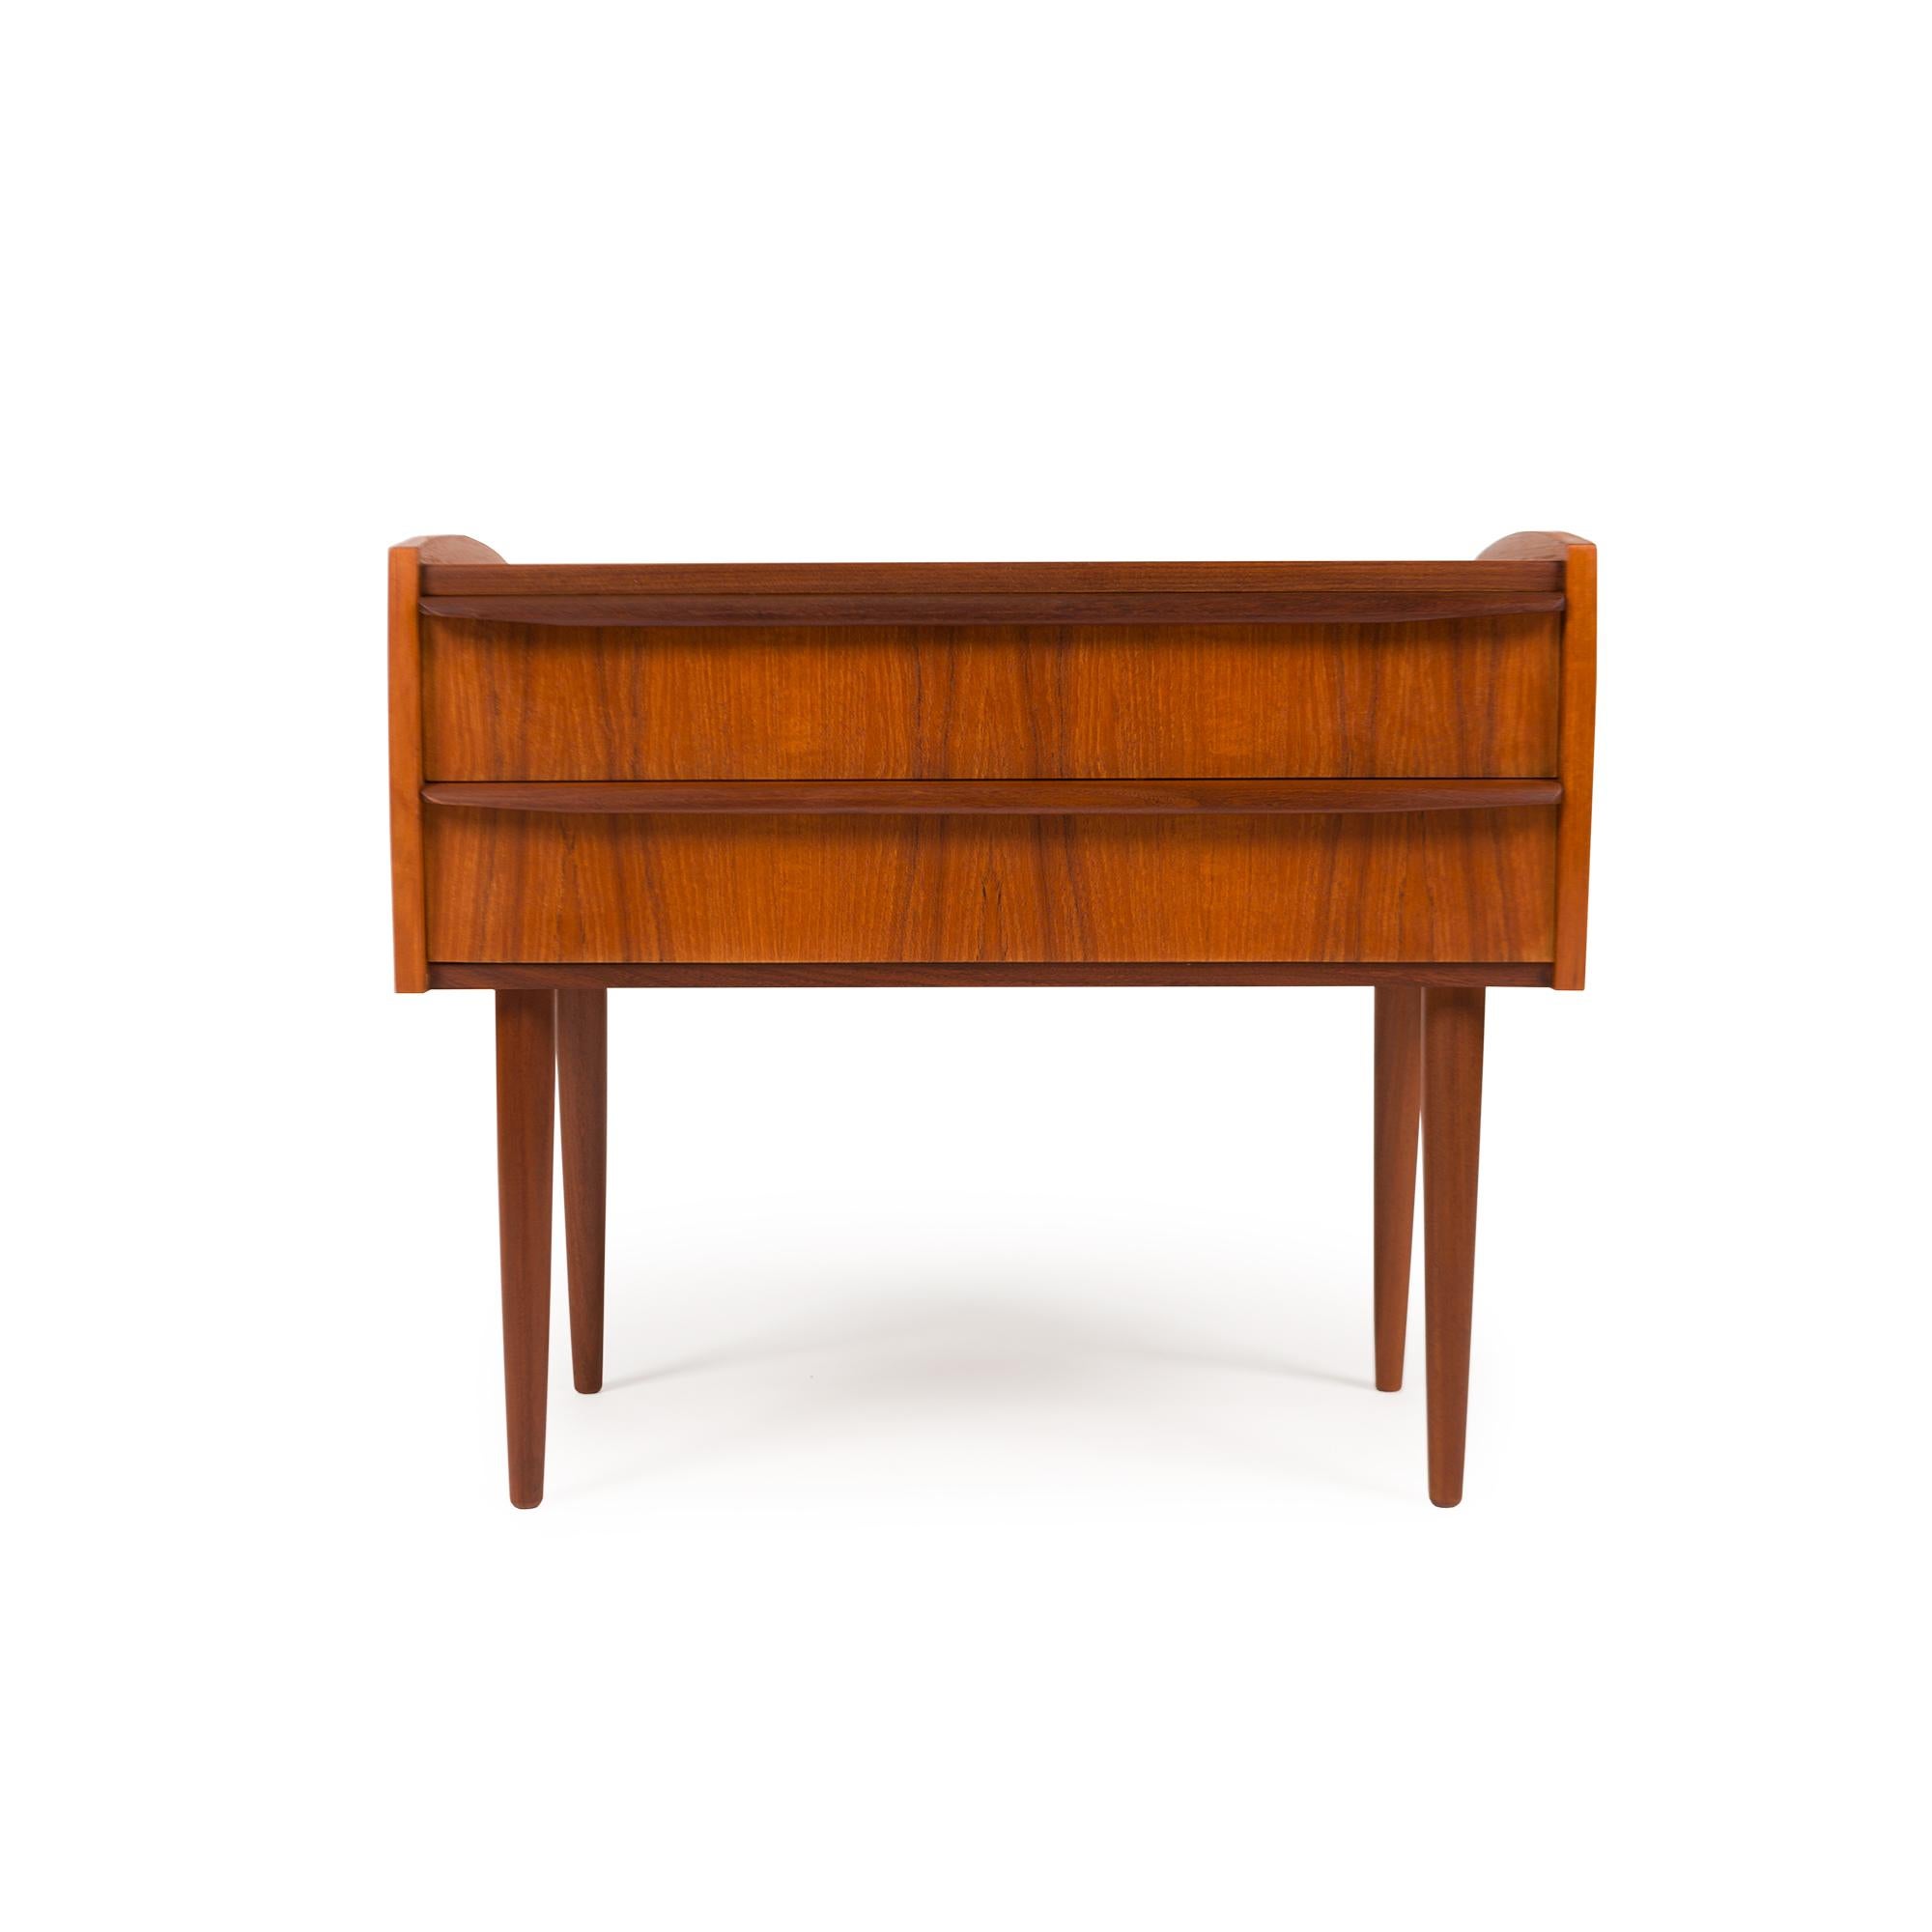 Die dänischen Mid-Century-Möbel verkörpern mit ihrer zeitlosen Eleganz, Funktionalität und außergewöhnlichen Handwerkskunst die skandinavischen Designprinzipien. Die in den 1950er und 1960er Jahren aufblühende Kunst spiegelt die Sensibilität der